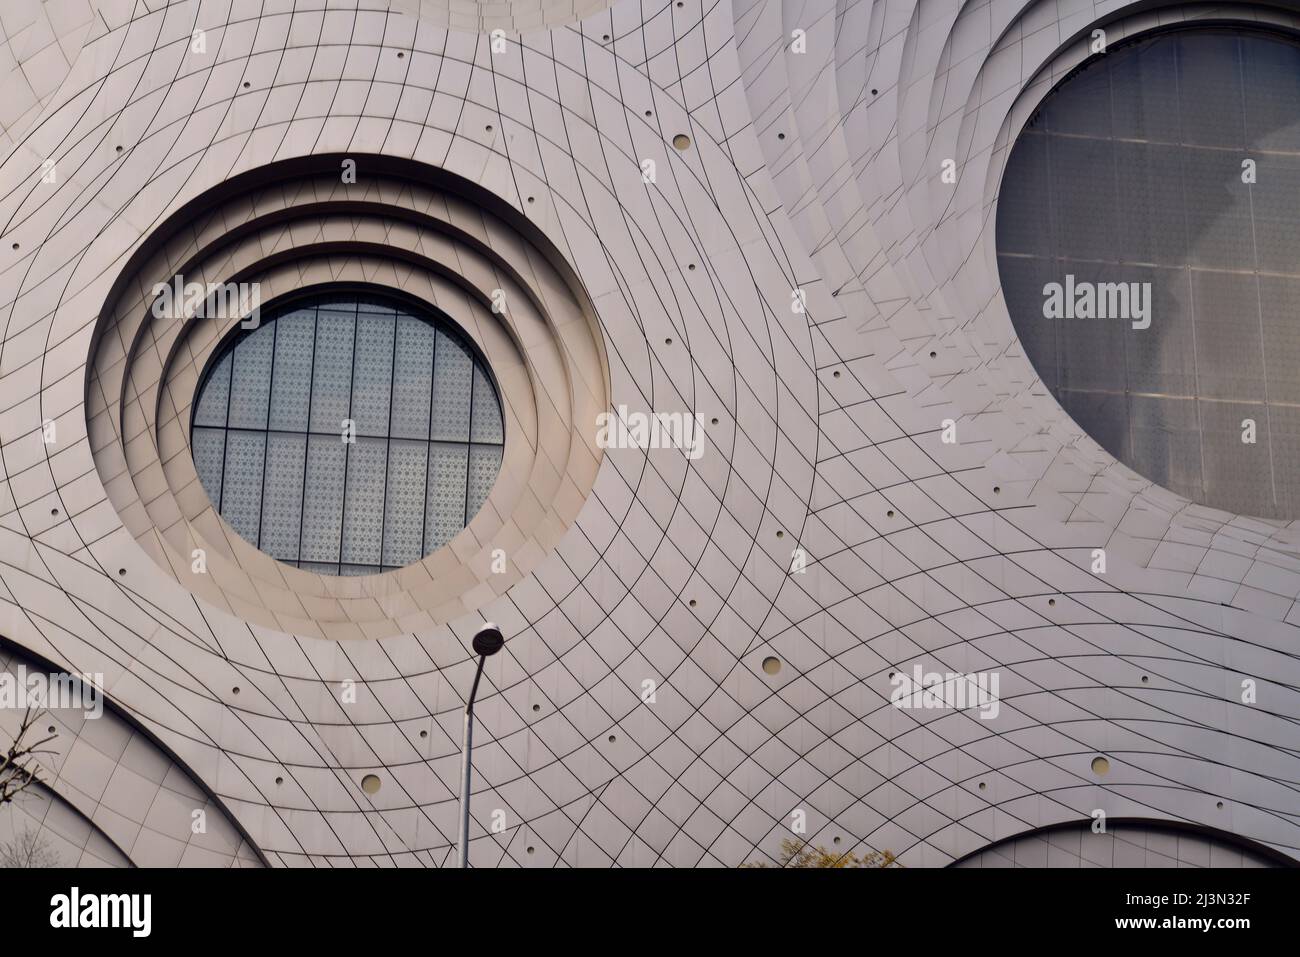 Das ist eine großartige Gebäudefassade mit Aluminiumverbundplatten, die in Form eines Echos umkreist sind Stockfoto